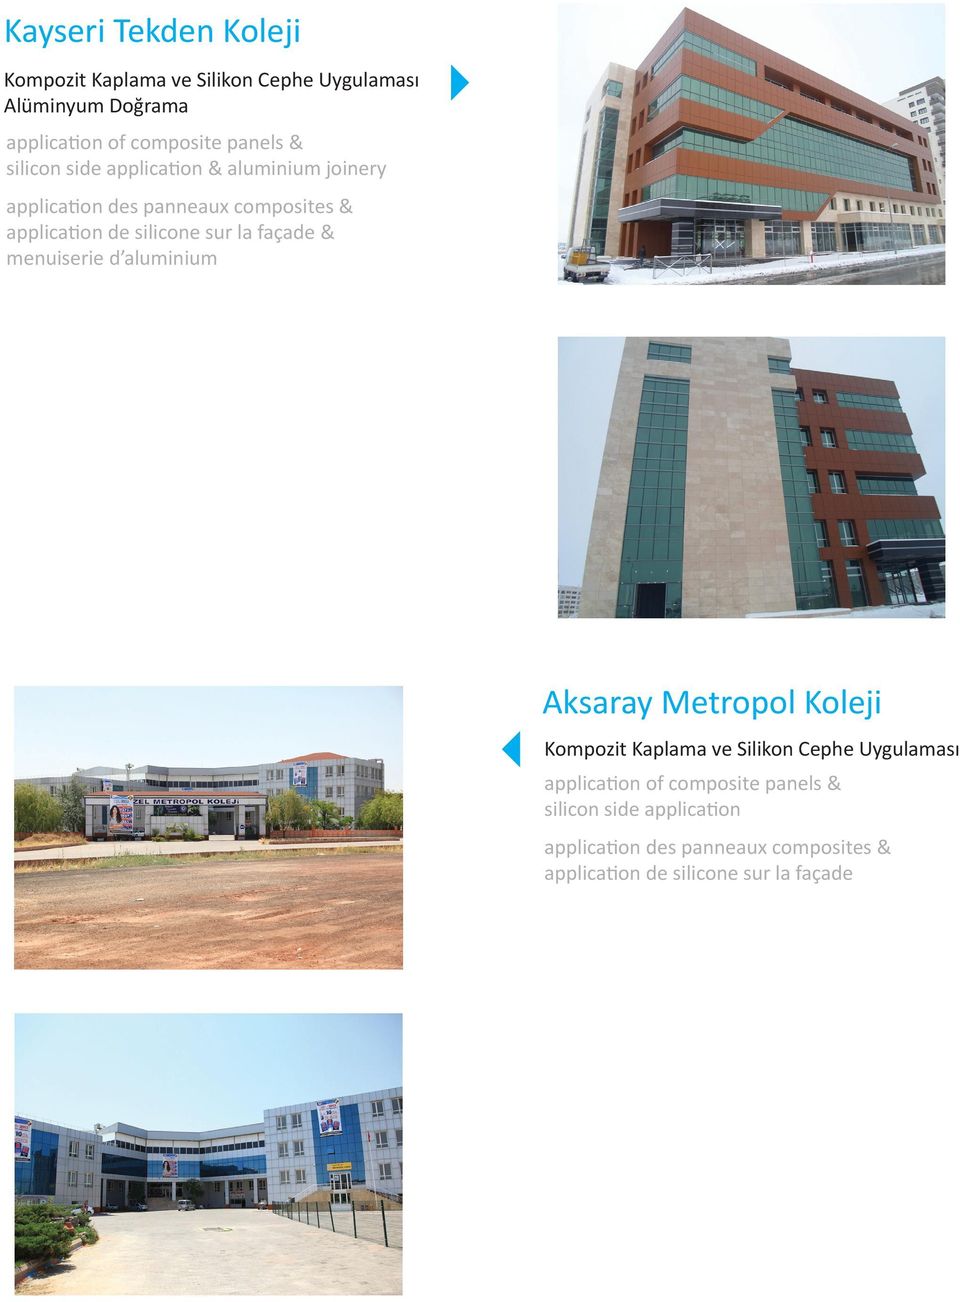 joinery & menuiserie d aluminium Aksaray Metropol Koleji